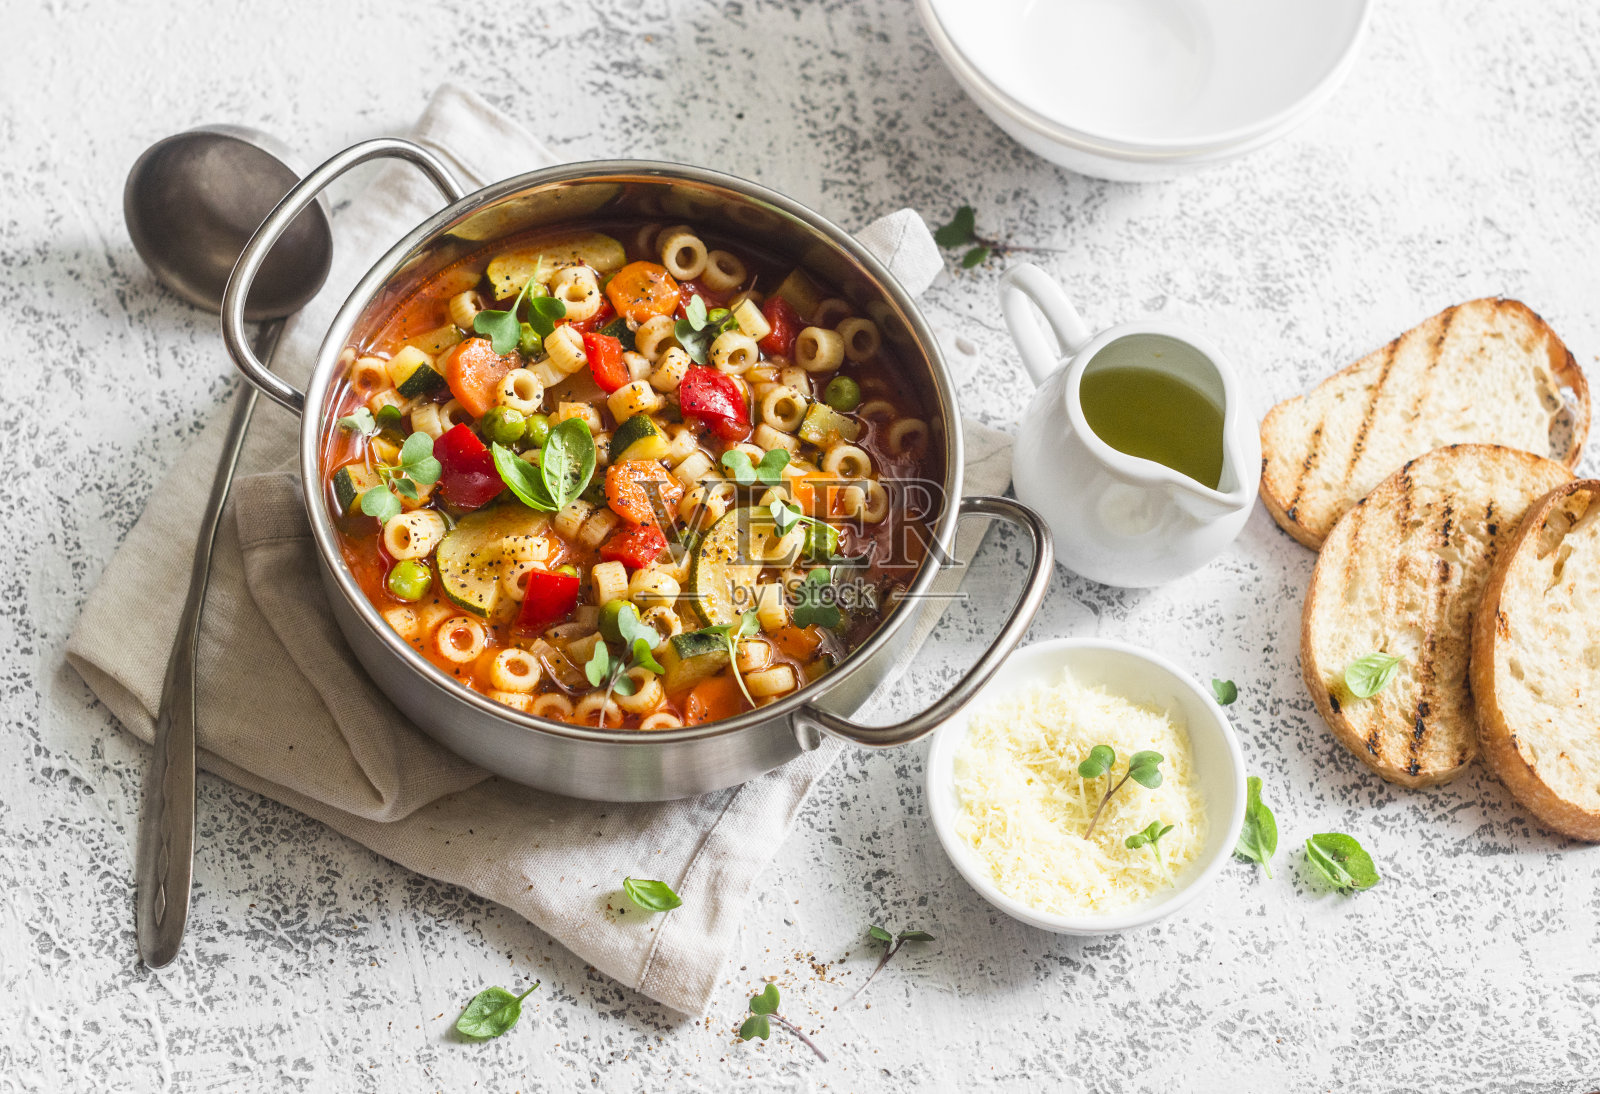 奶油南瓜汤做法 - 地中海饮食食谱 - 西班牙橄榄油行业协会